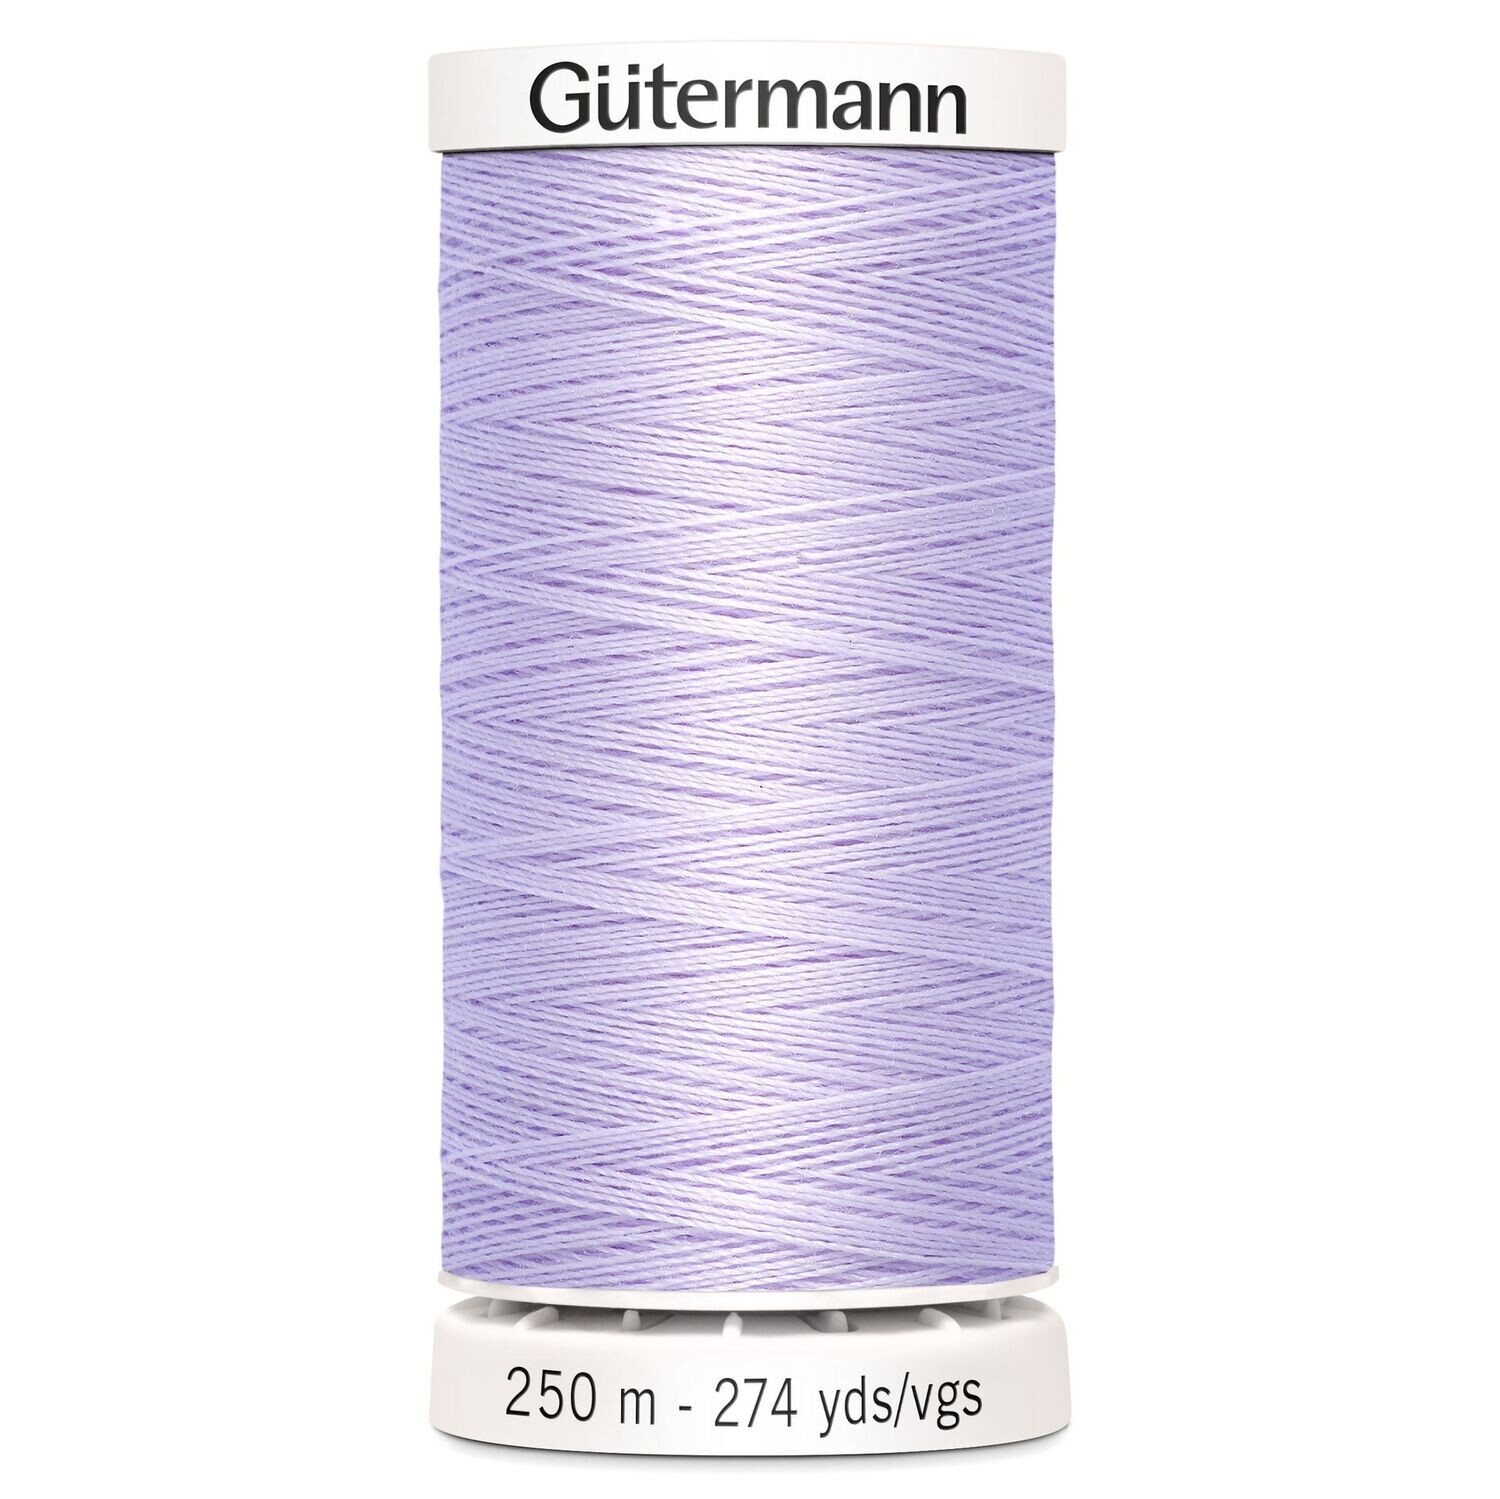 Sew All Thread 250m - Gutermann - Colour 442